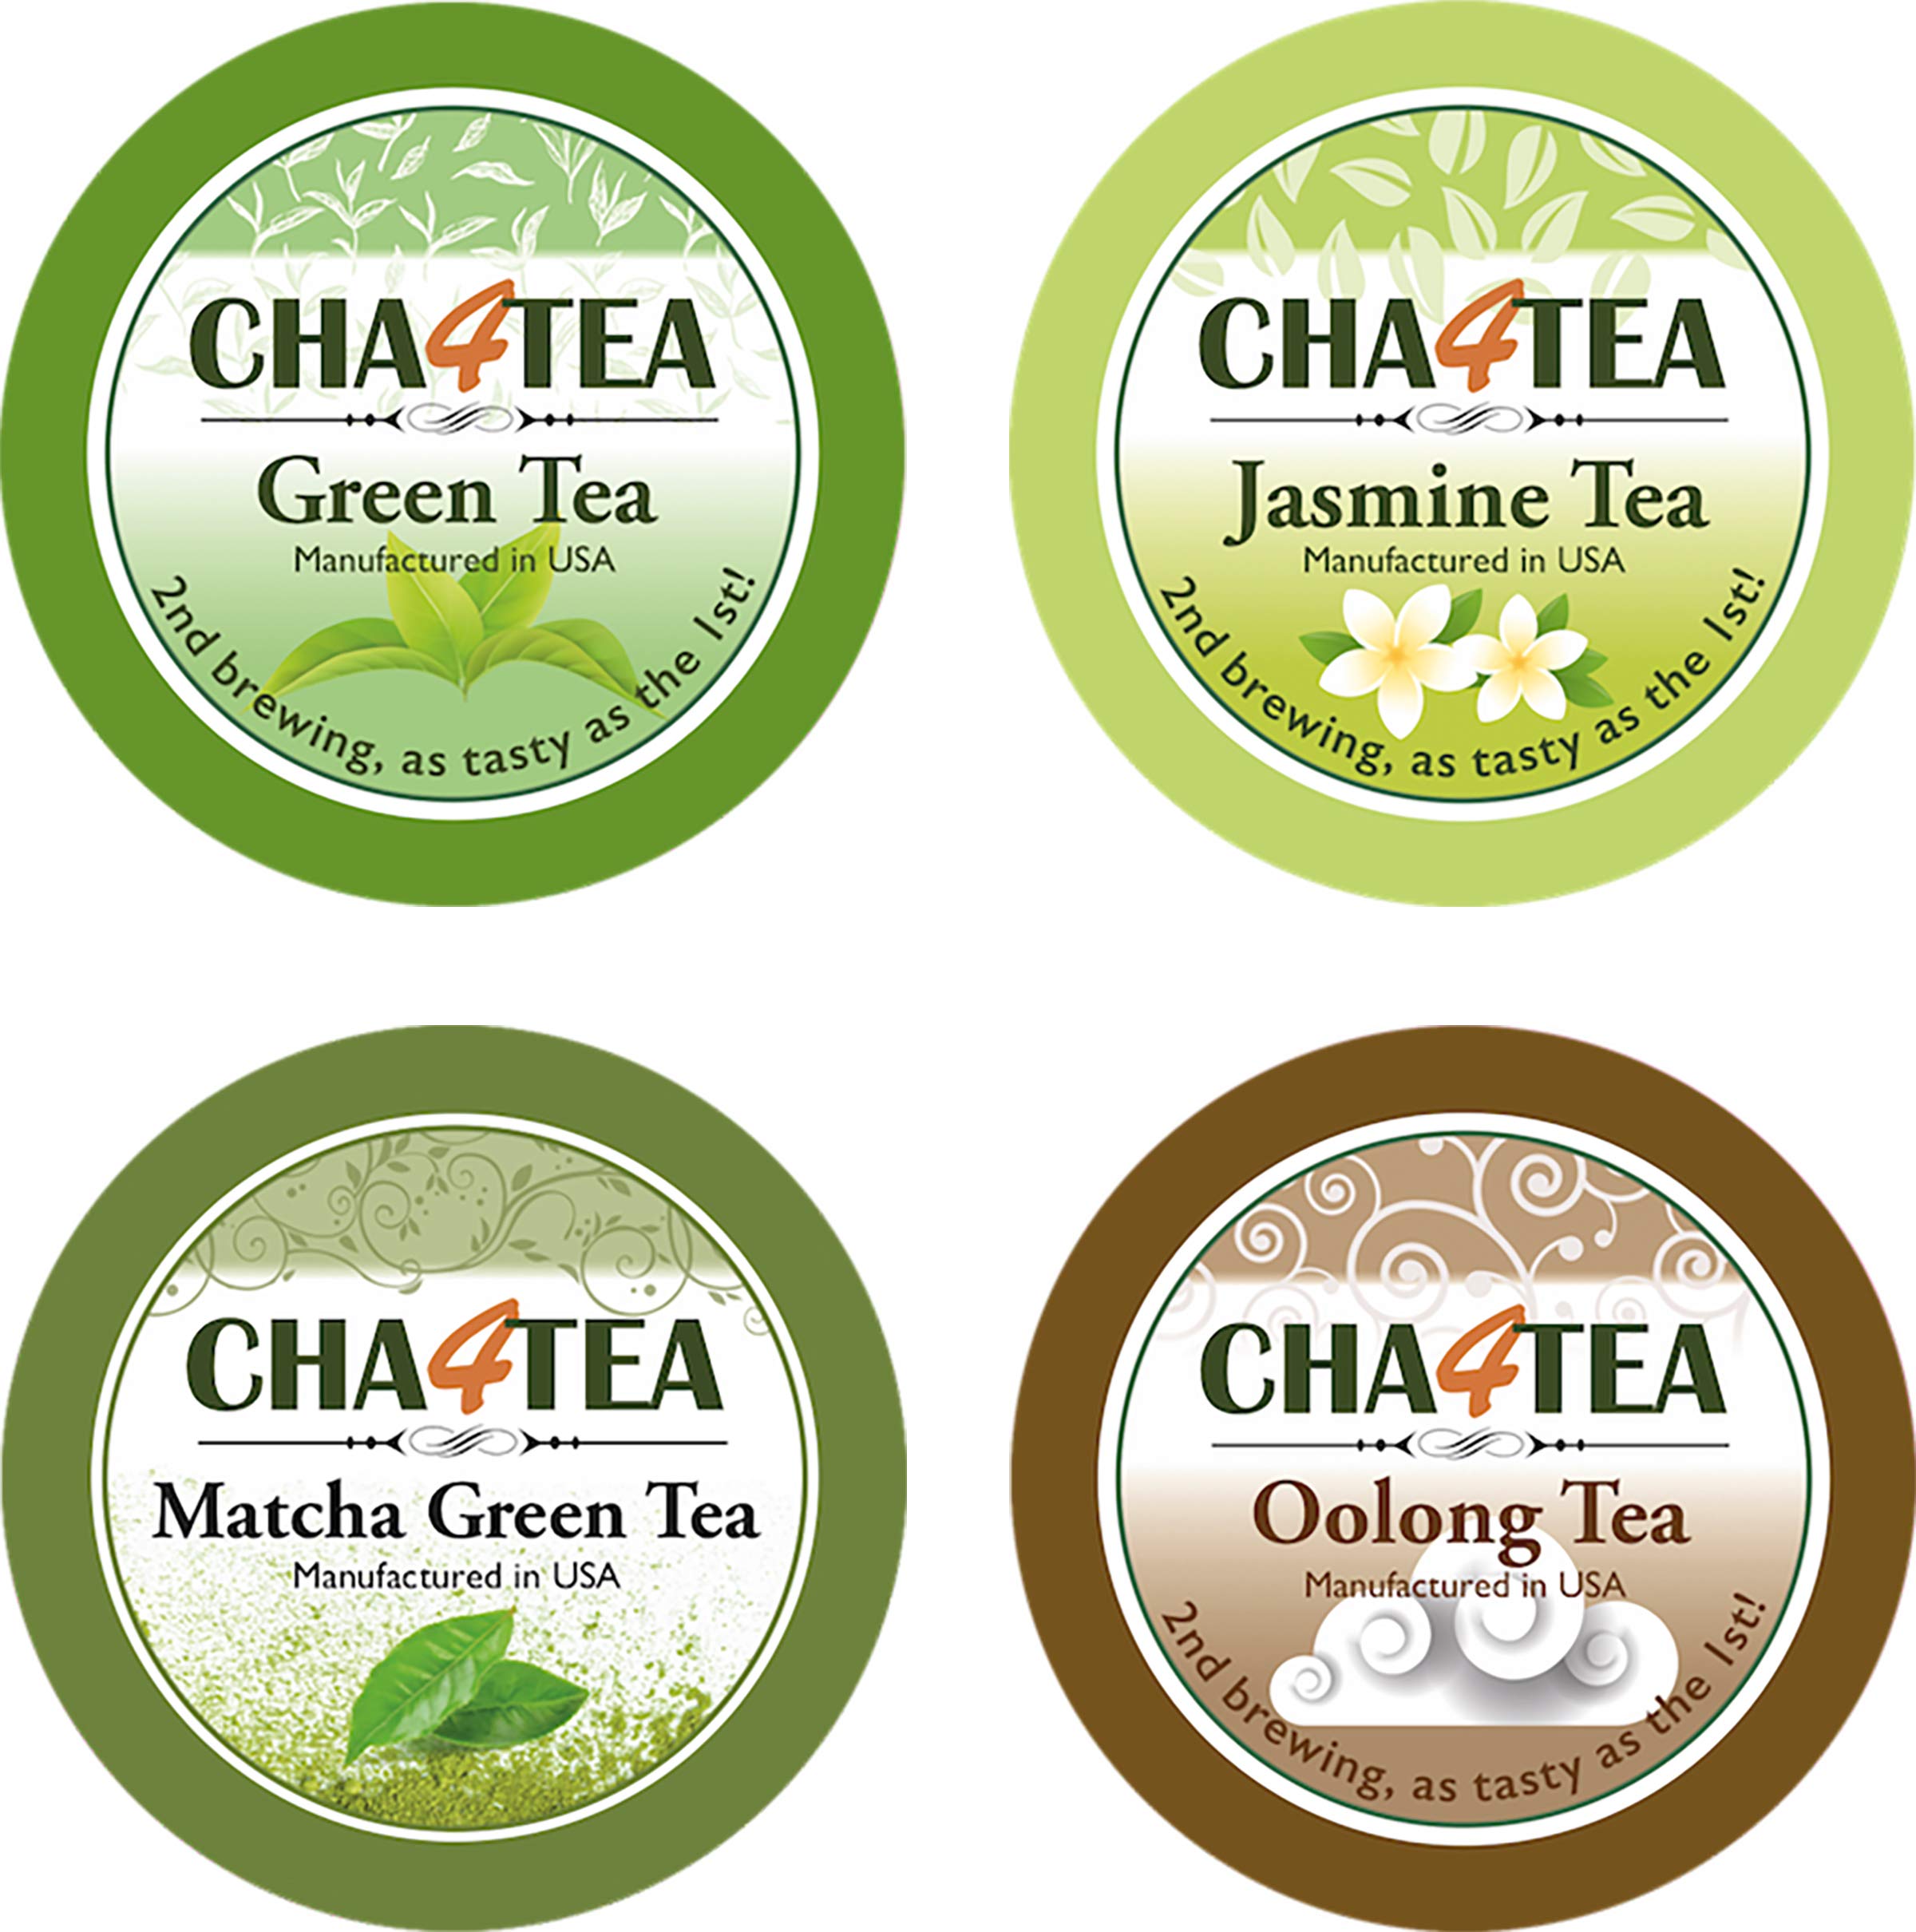 Cha4TEA 36-Count Assorted Green Tea for Keurig K-Cup Brewers (Matcha Green Tea, Green Tea, Jasmine /Oolong Green Tea)